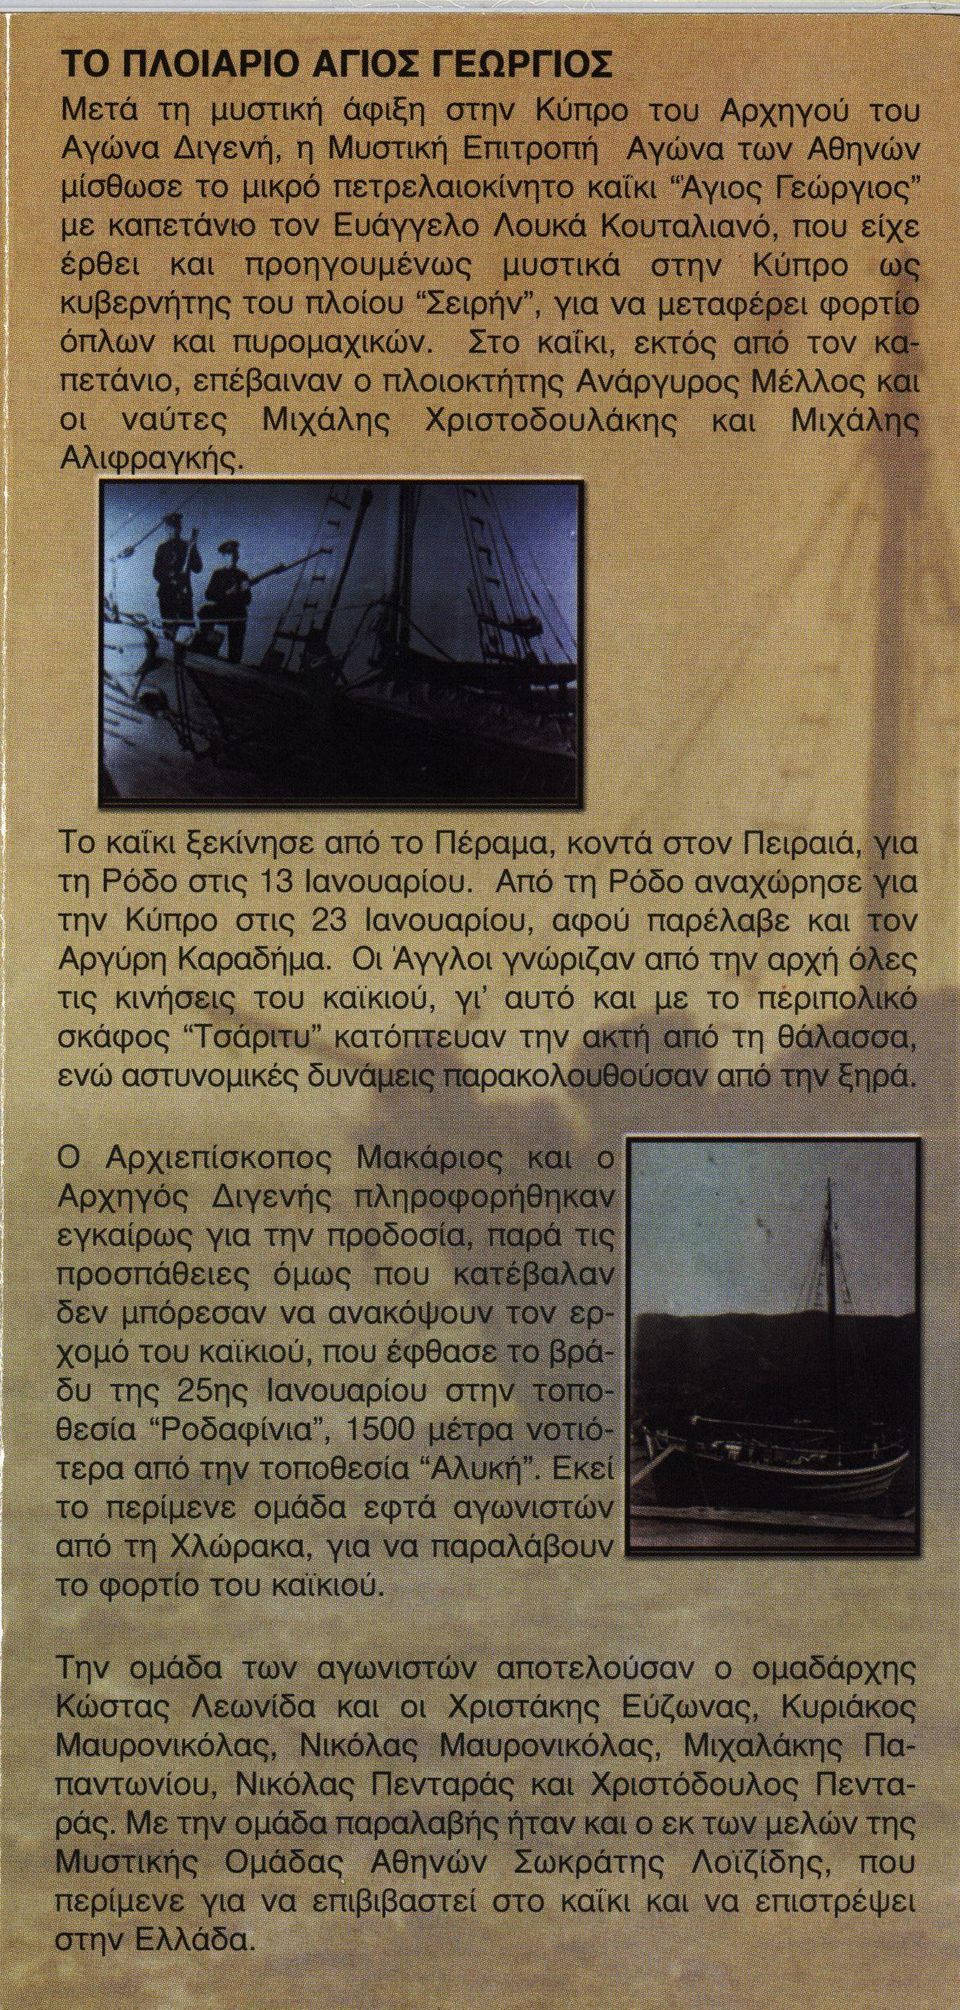 Στο καΐκι, εκτός από τον κα πετάνιο, επέβαιναν ο πλοιοκτήτης Ανάργυρος Μέλλος και οι ναύτες Μιχάλης Χριστοδουλάκης και Μιχάλης Αλιφραγκής.